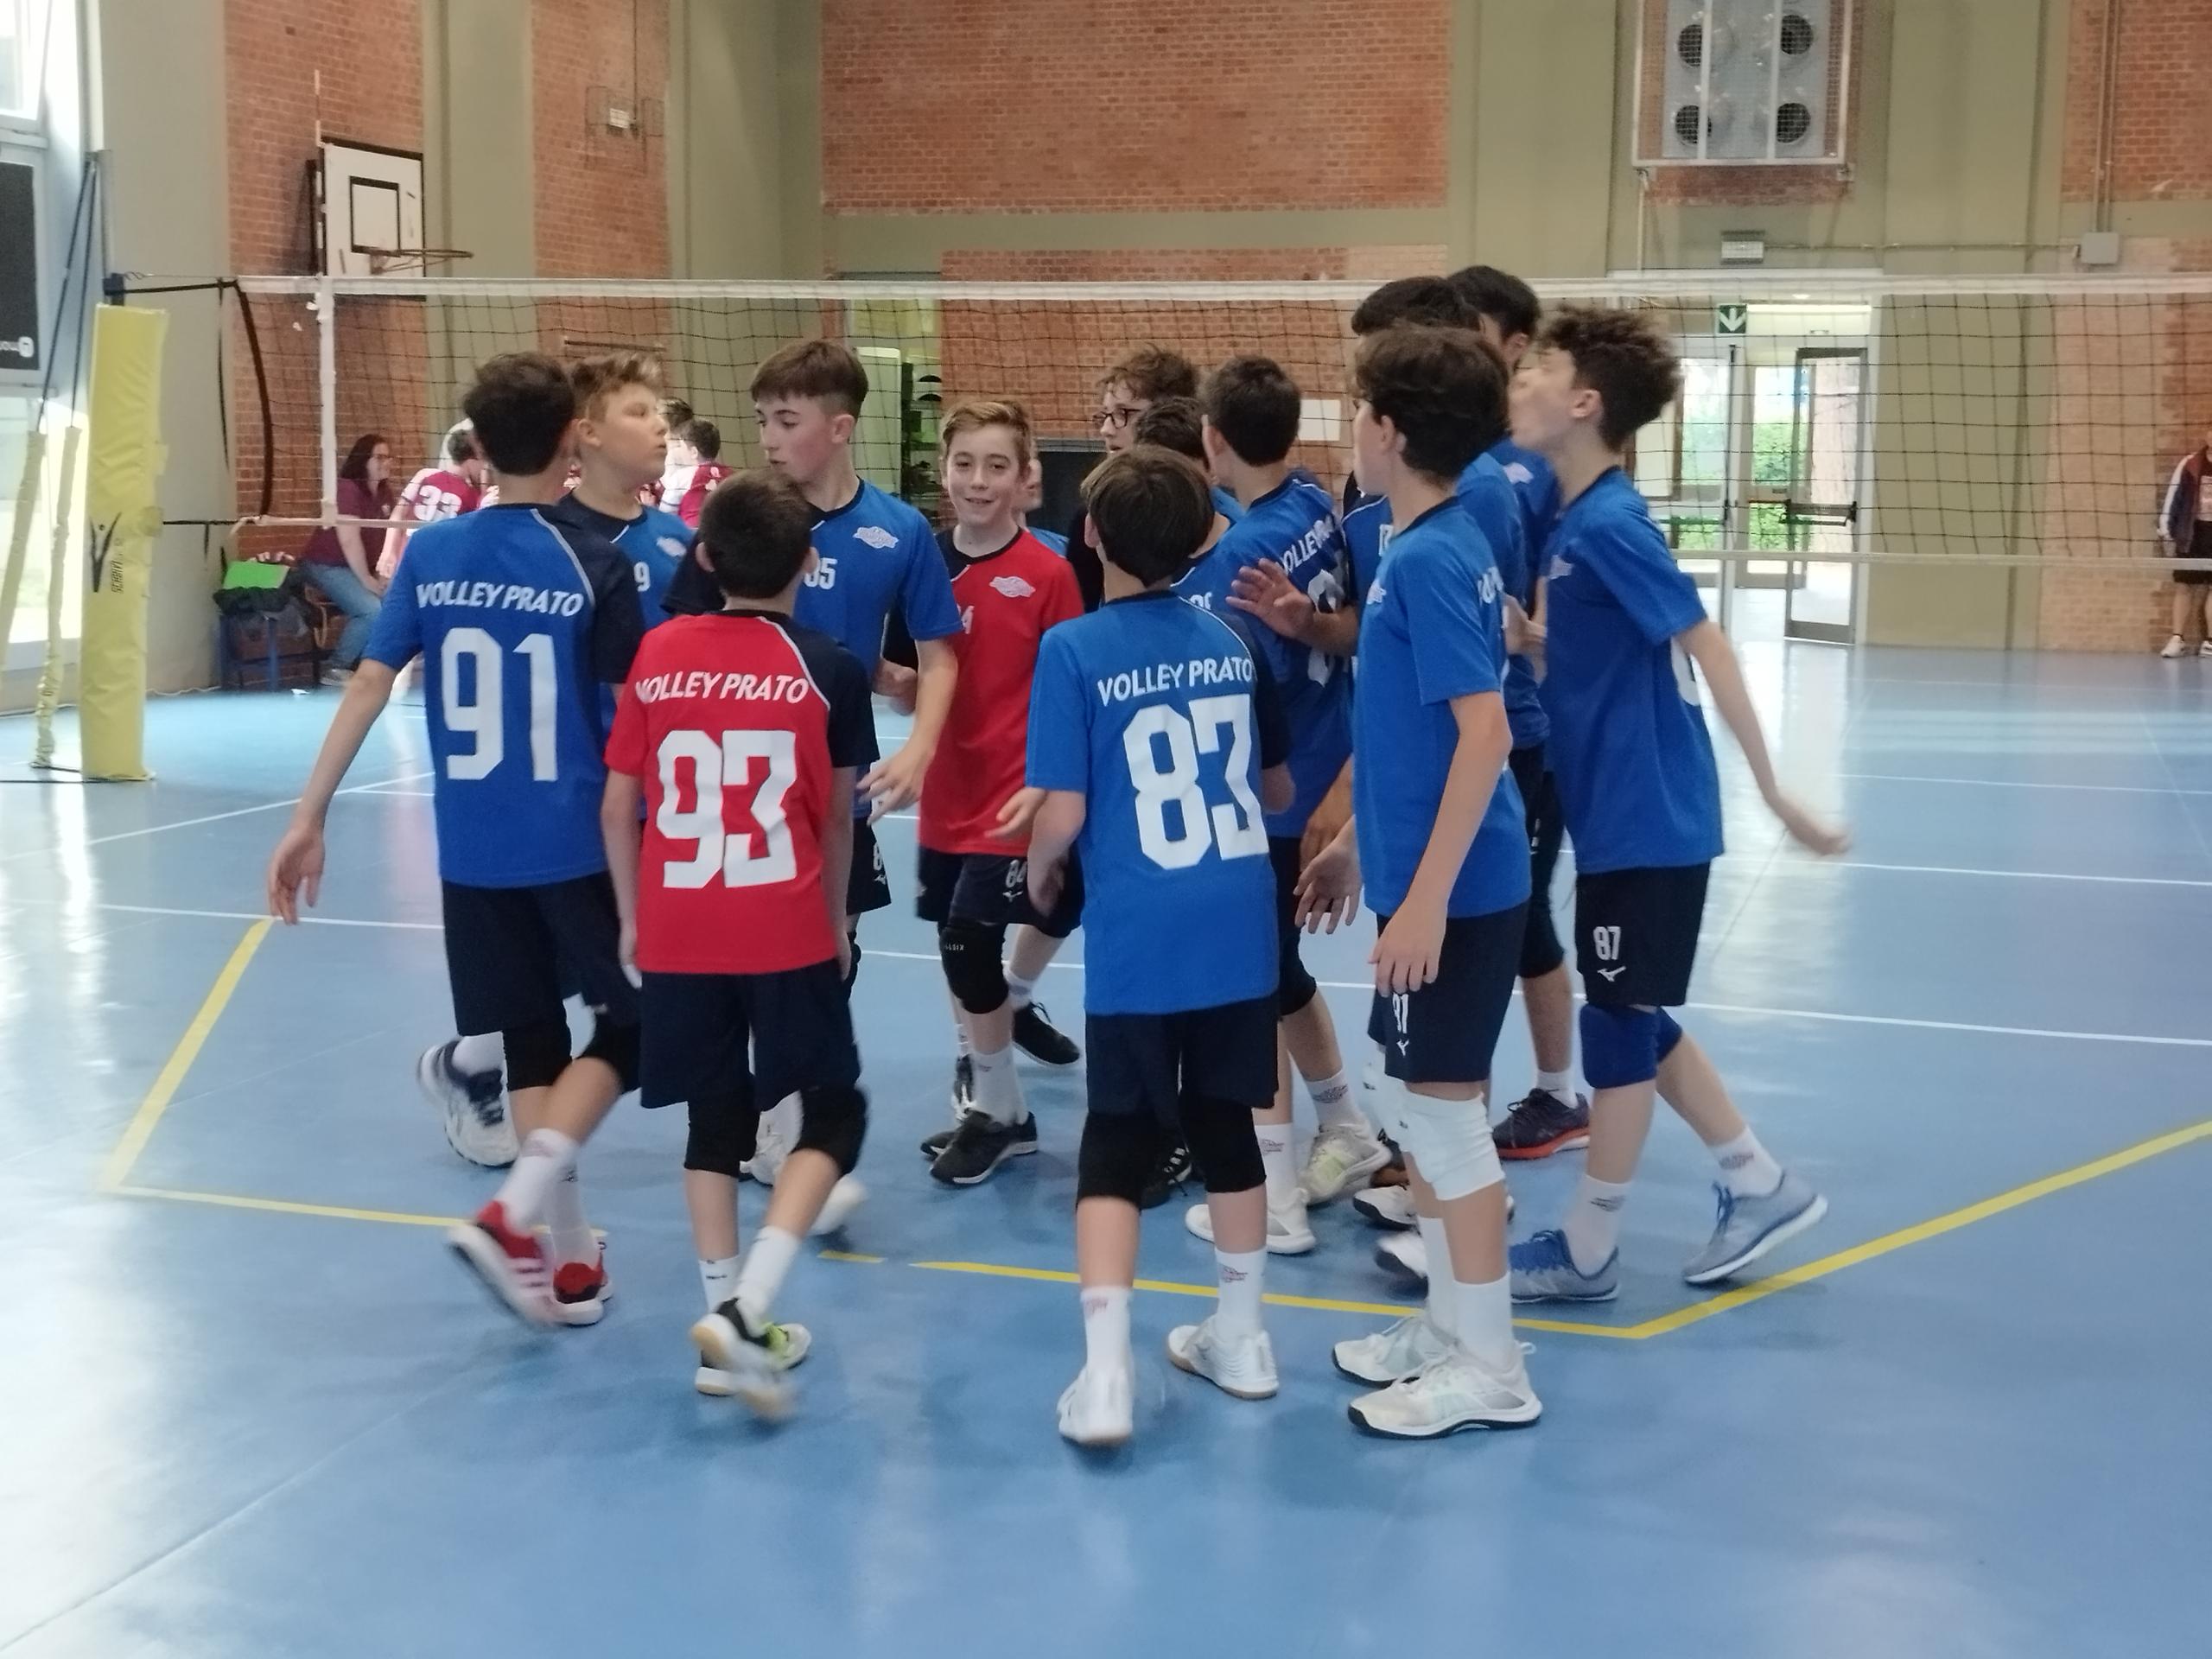 Coppa Bianco Rossa Under 13: il Volley Prato chiude con una sconfitta di misura dal Firenze Ovest